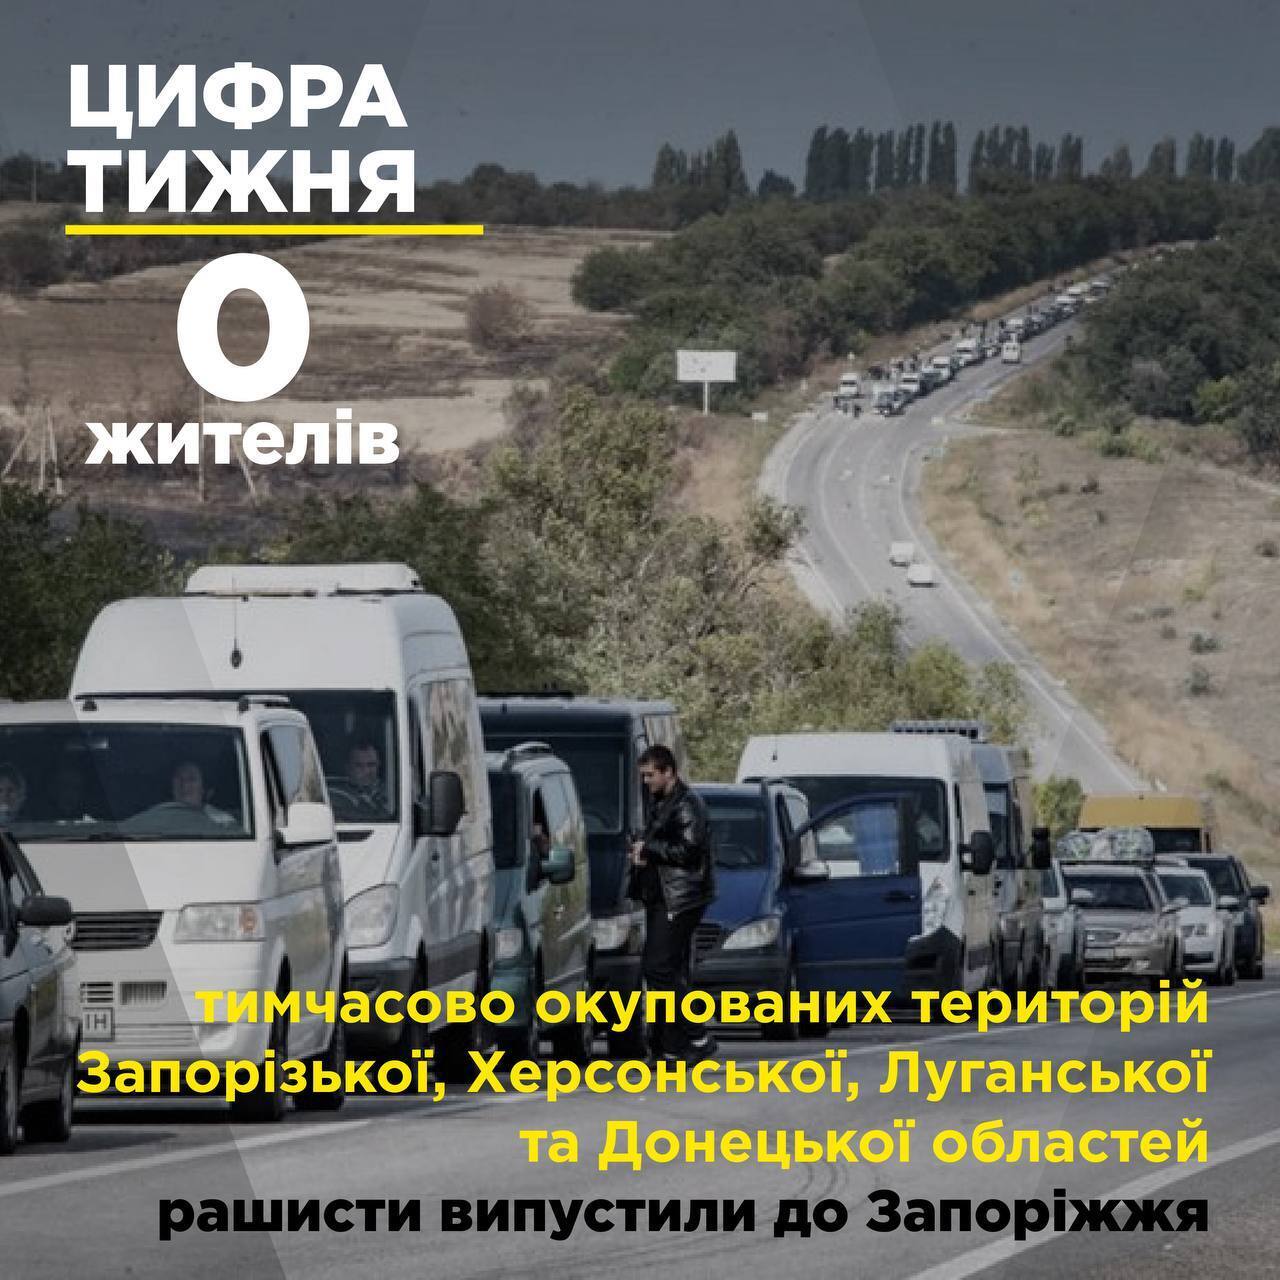 Россияне сделали из оккупированных территорий резервацию и держат людей в заложниках, – мэр Мелитополя